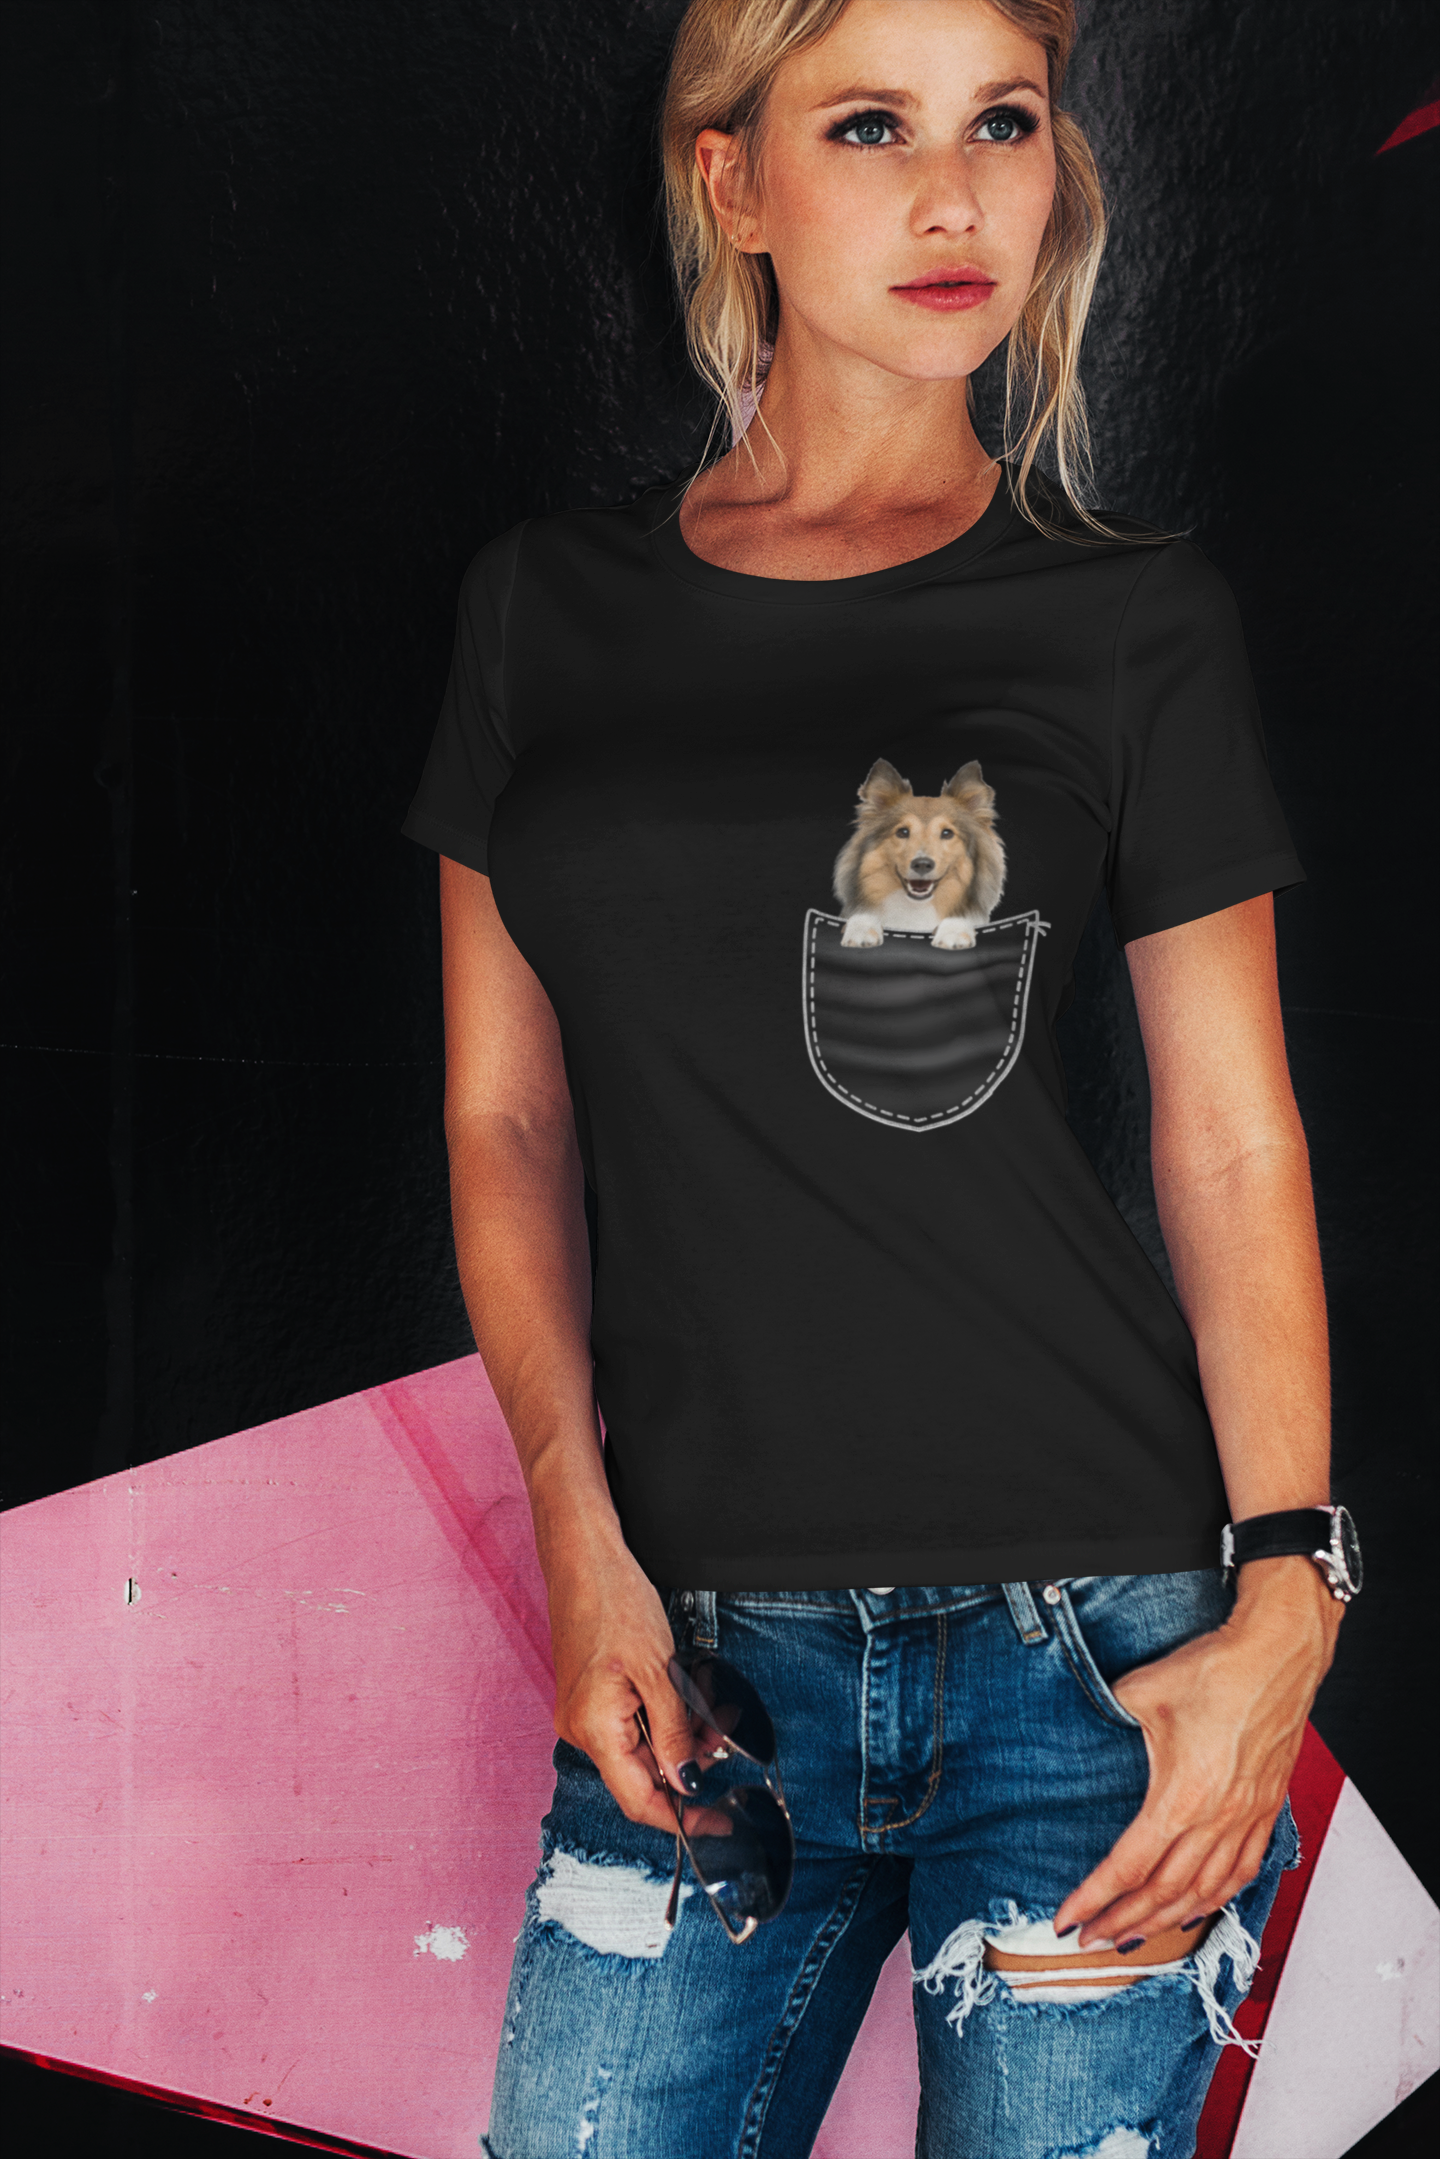 ULTRABASIC Grafik Damen T-Shirt Rough Collie – süßer Hund in der Tasche